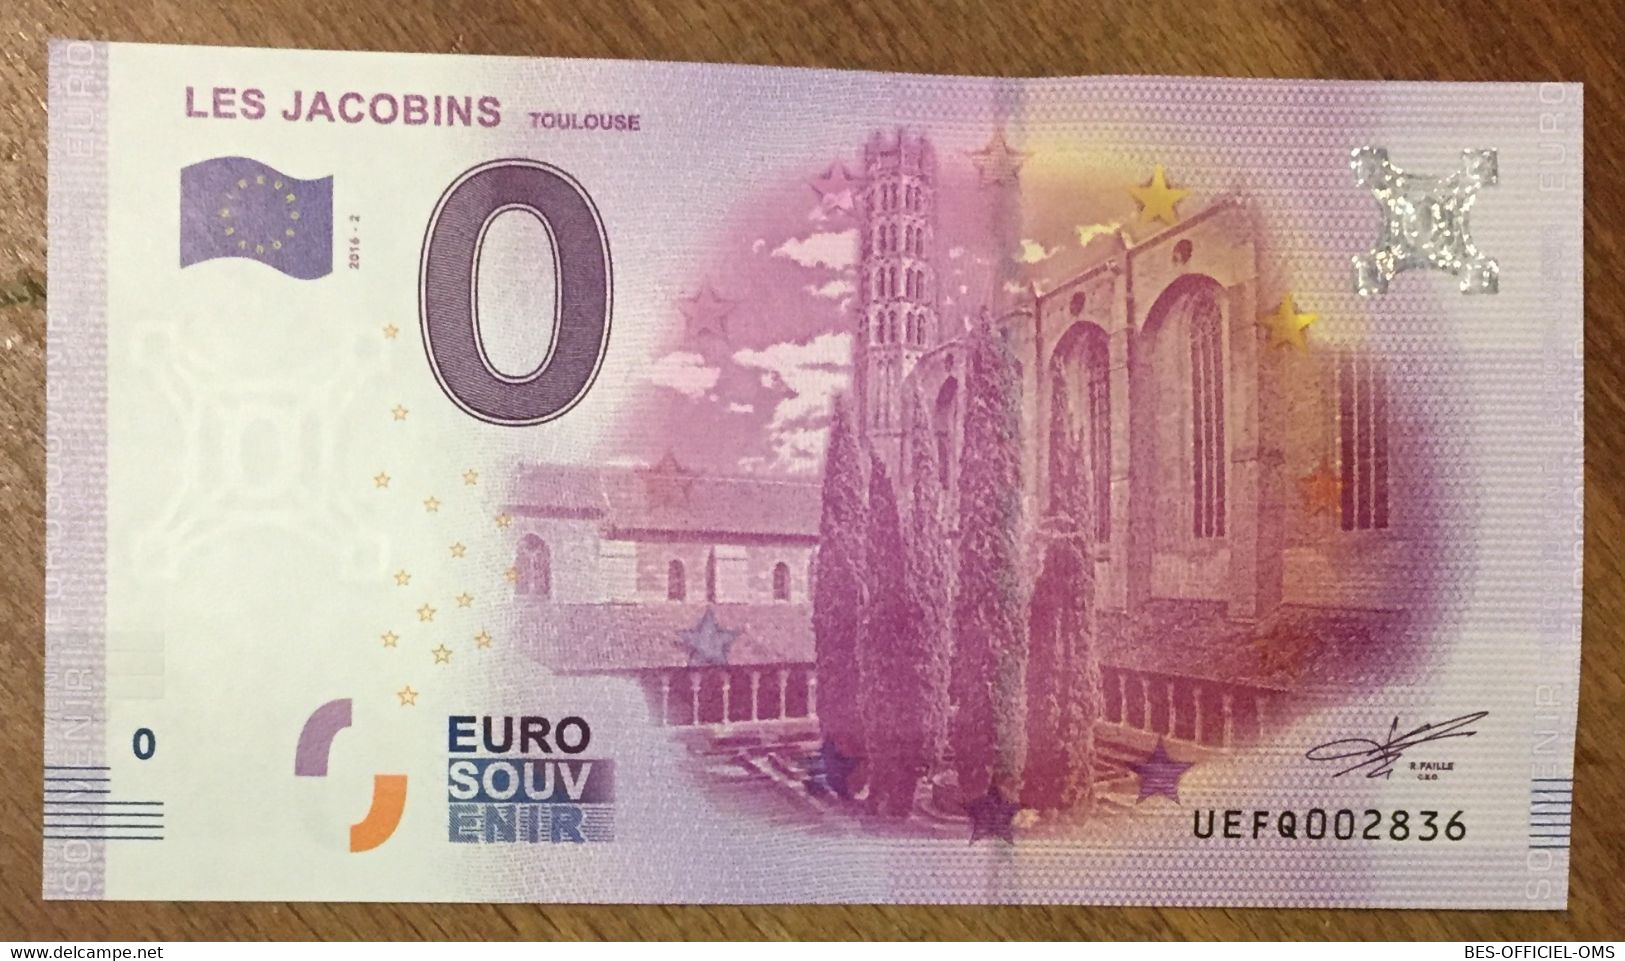 2016 BILLET 0 EURO SOUVENIR DPT 31 LES JACOBINS TOULOUSE ZERO 0 EURO SCHEIN BANKNOTE PAPER MONEY BANK - Private Proofs / Unofficial